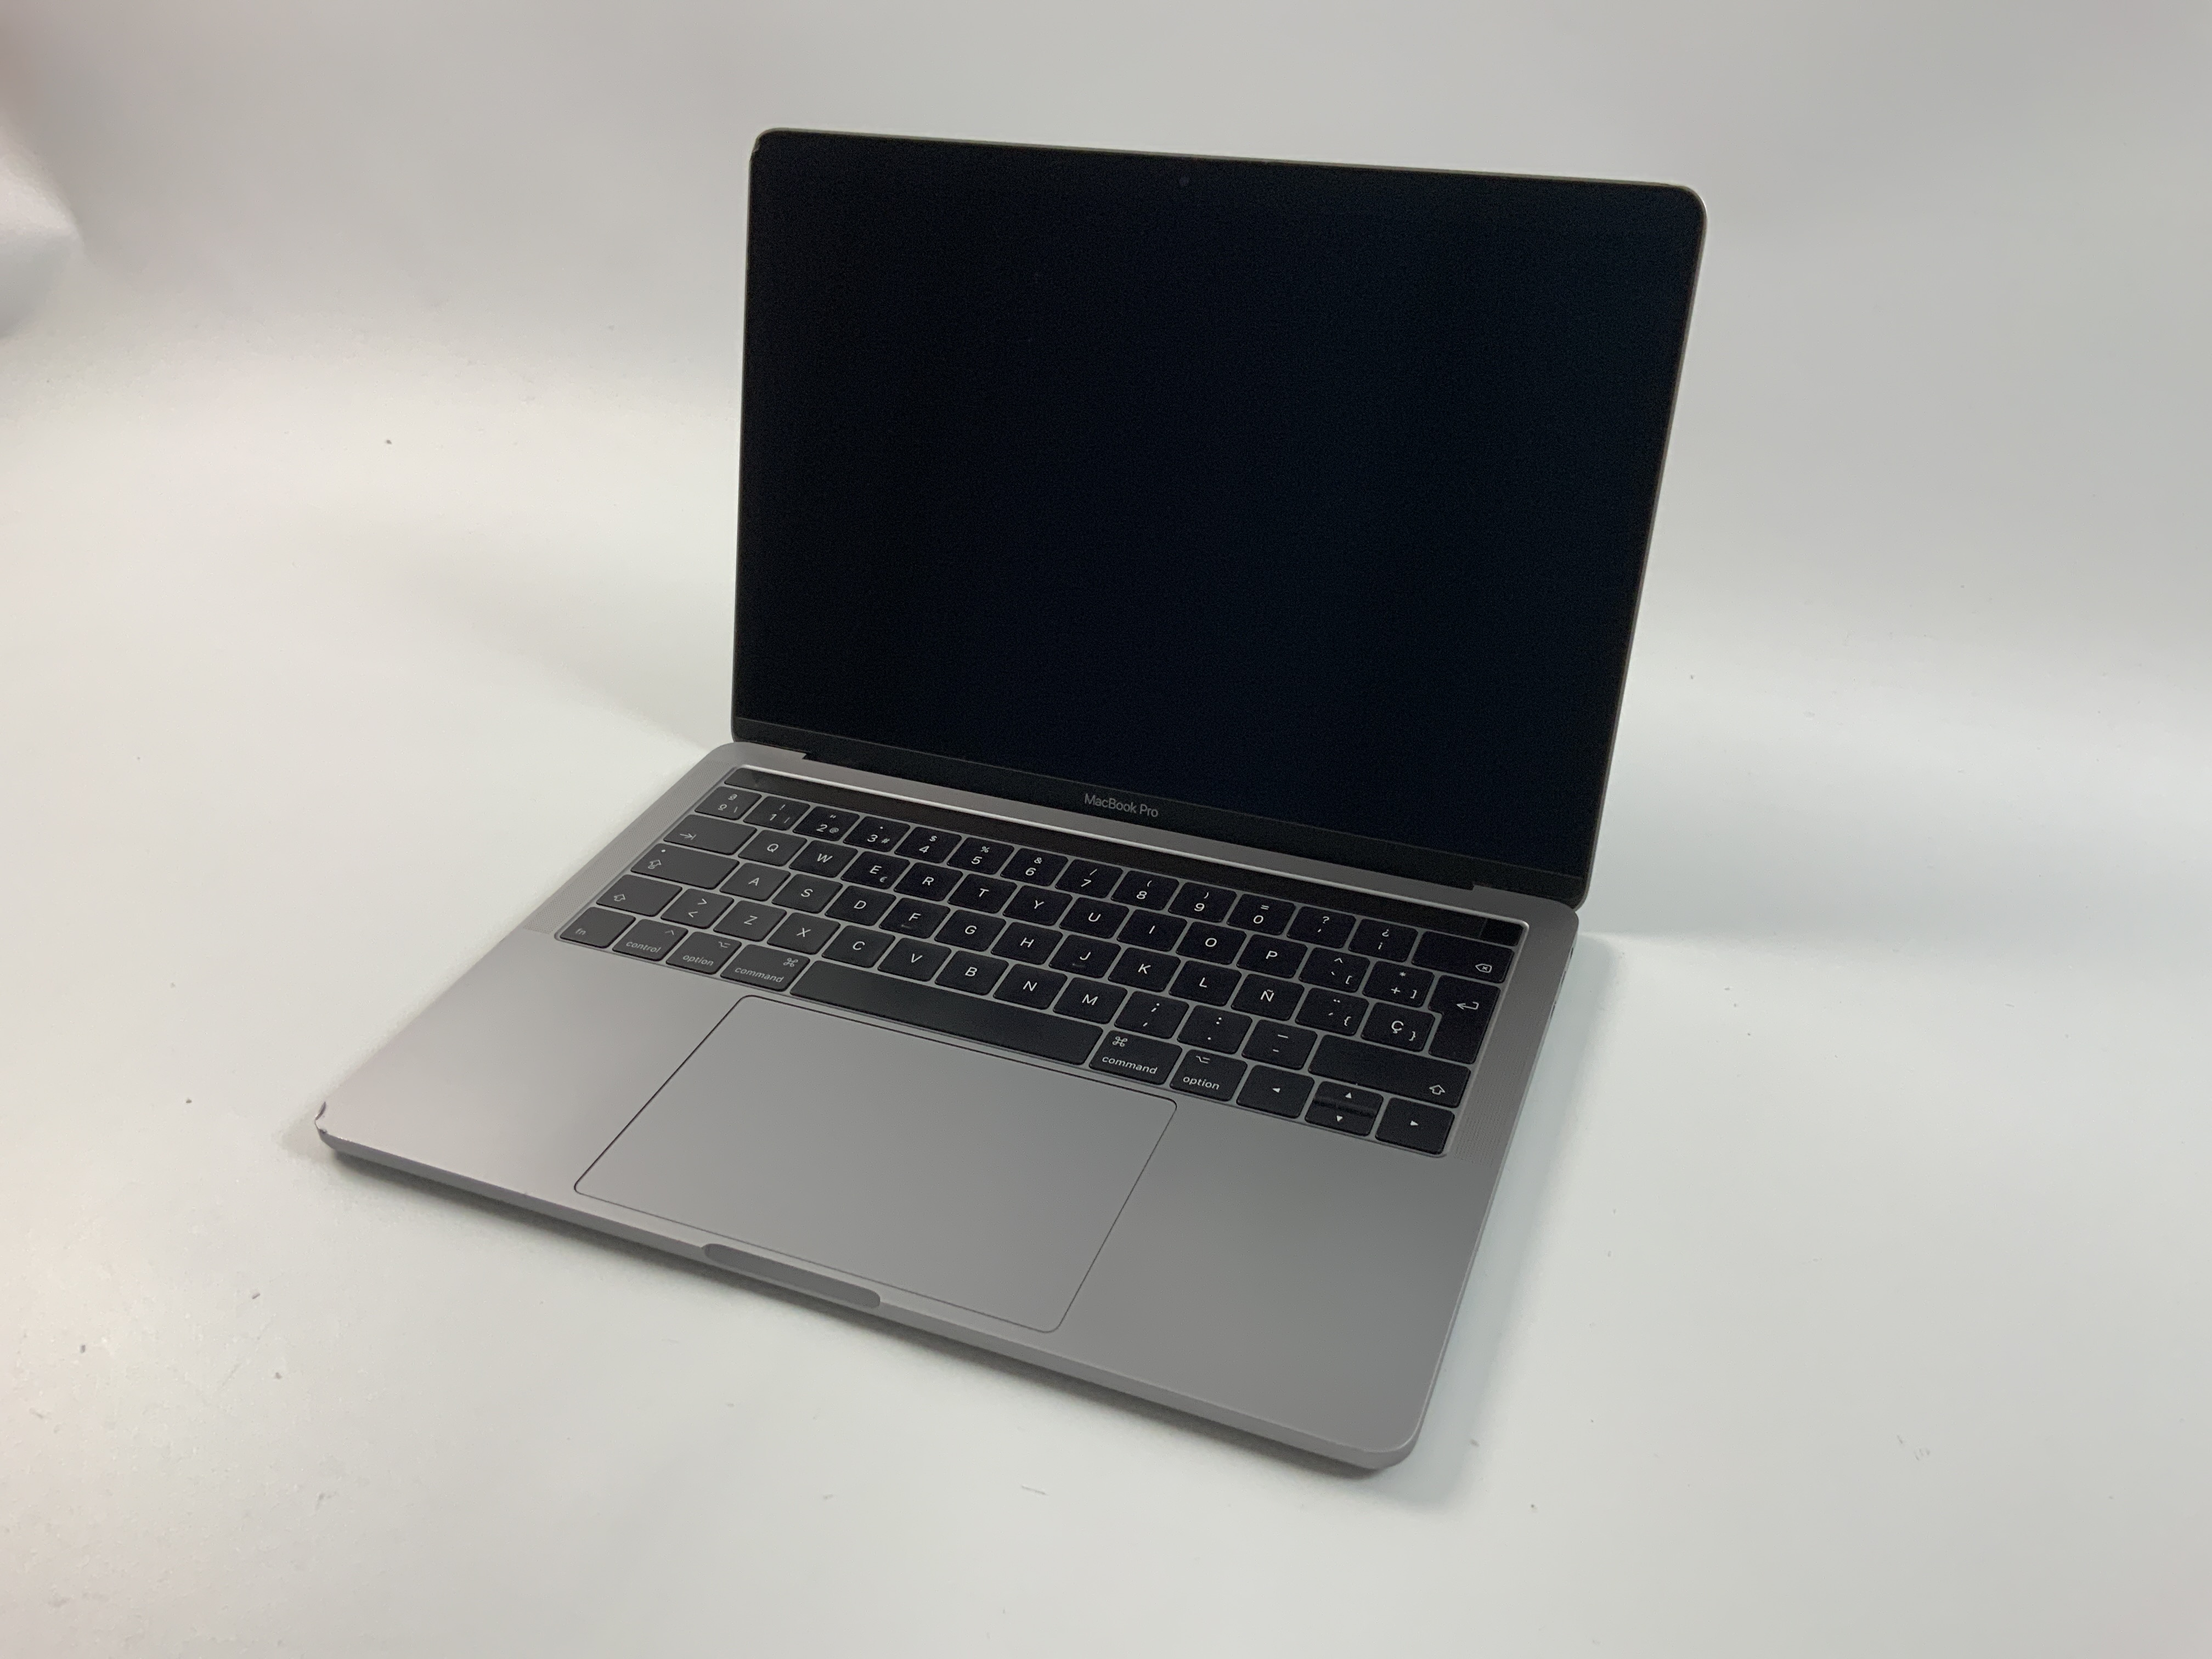 MacBook Pro 13" 4TBT Mid 2017 (Intel Core i5 3.1 GHz 16 GB RAM 256 GB SSD), Space Gray, Intel Core i5 3.1 GHz, 16 GB RAM, 256 GB SSD, obraz 1